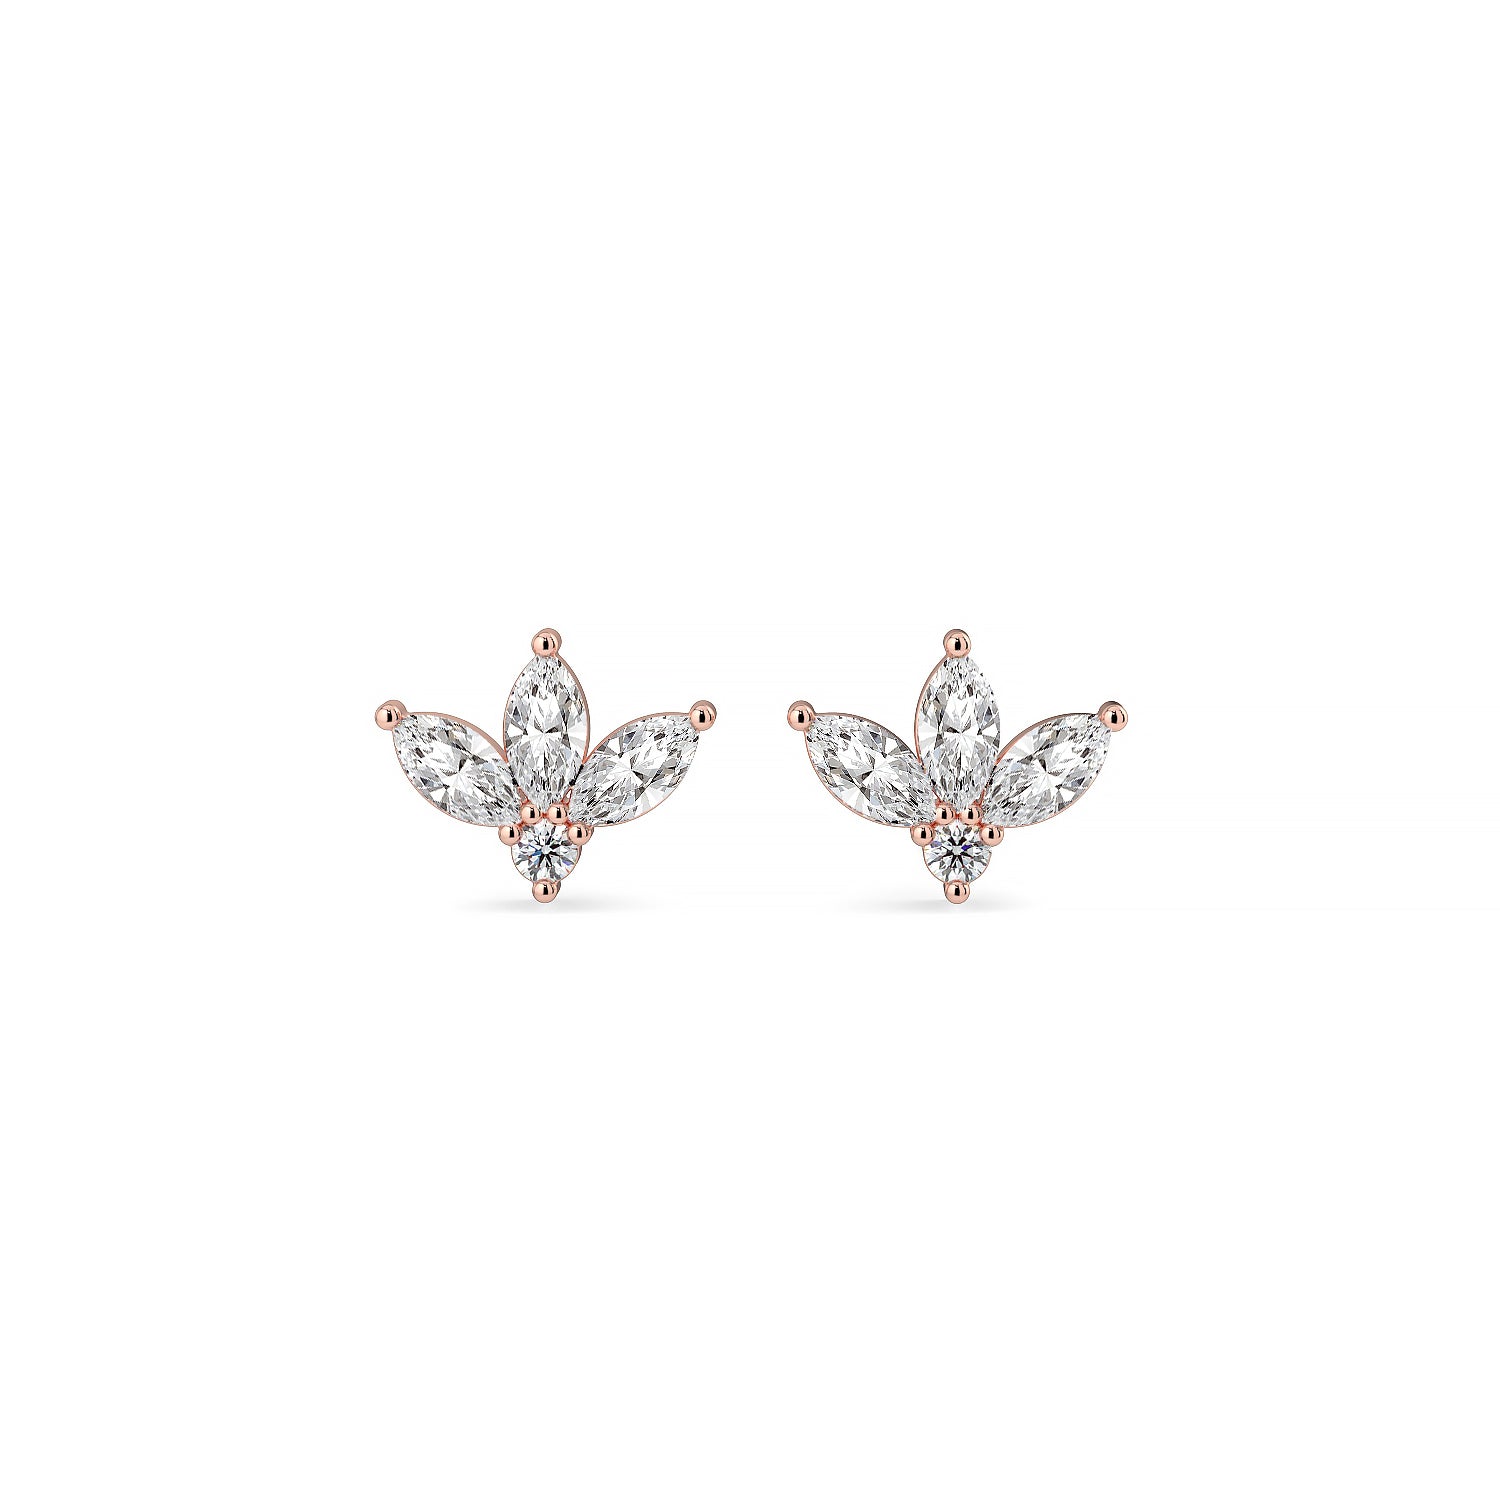 Half-flower diamond stud earrings